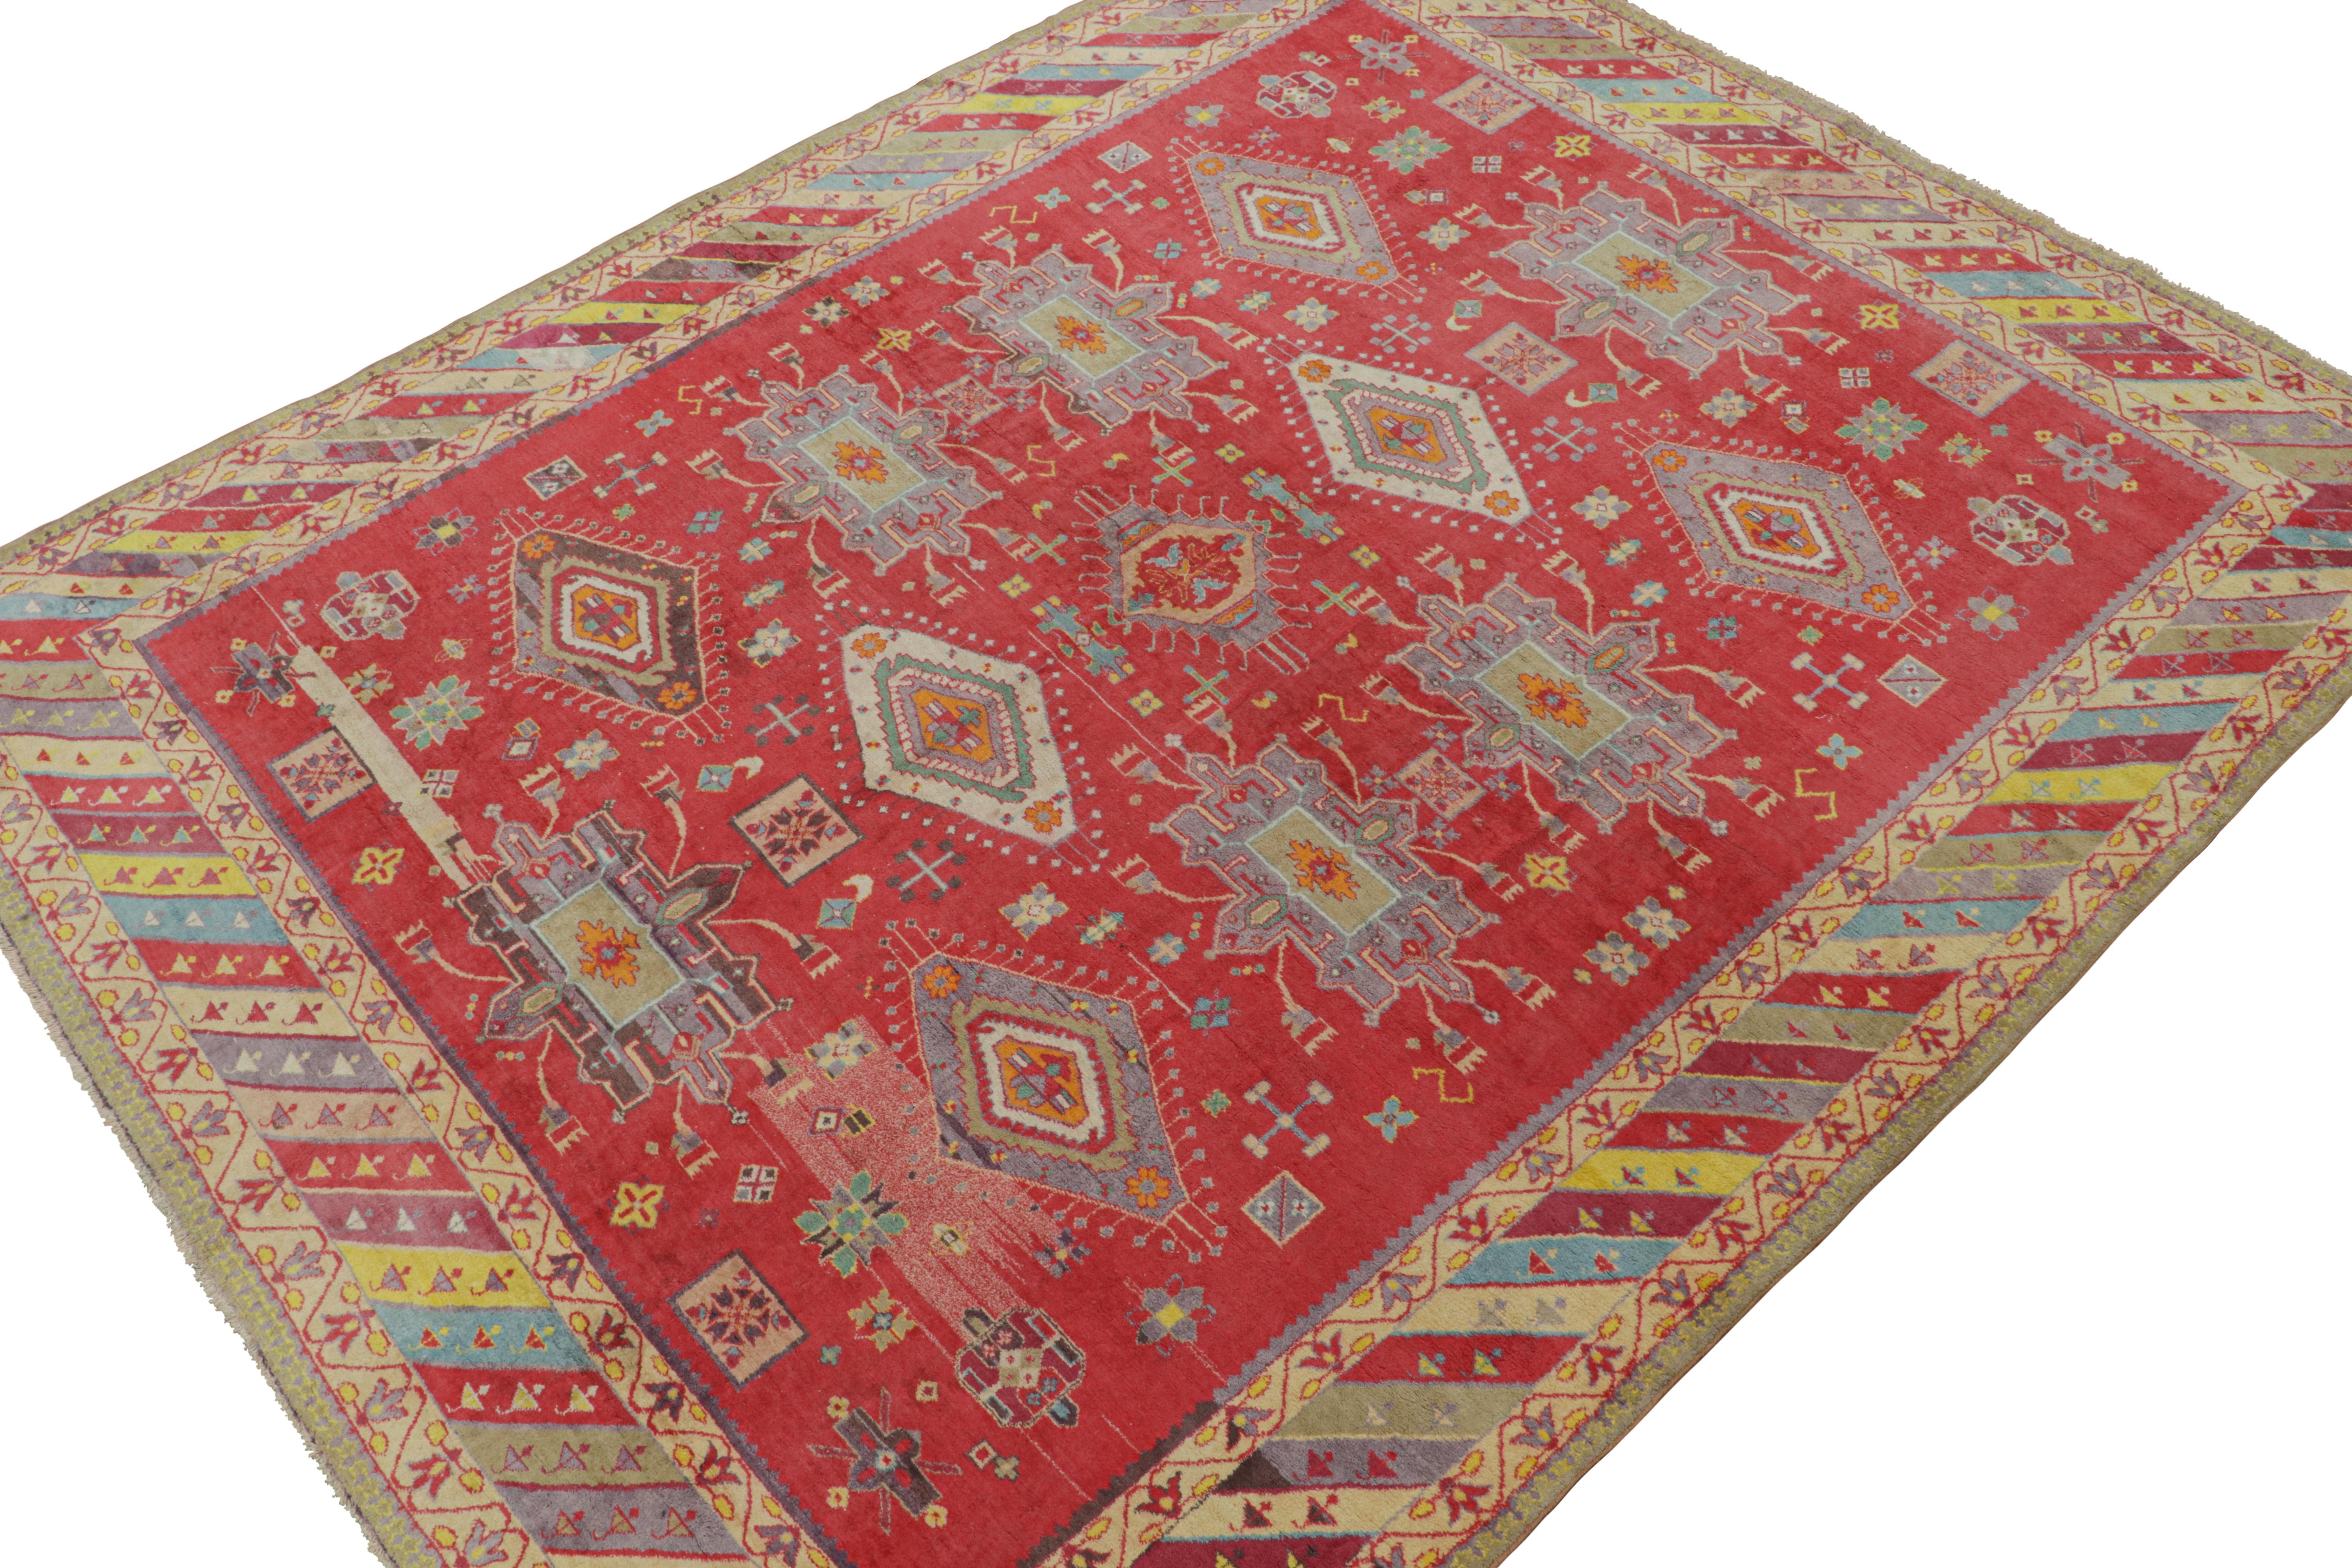 Dieser 9x12 große antike Agra-Teppich ist aus Baumwolle handgeknüpft und stammt aus Indien (ca. 1920-1930). Er ist eine aufregende neue Kuration von Rug & Kilim. 

Über das Design: 

Aufmerksame Augen werden die Vielfalt der hellen und leuchtenden